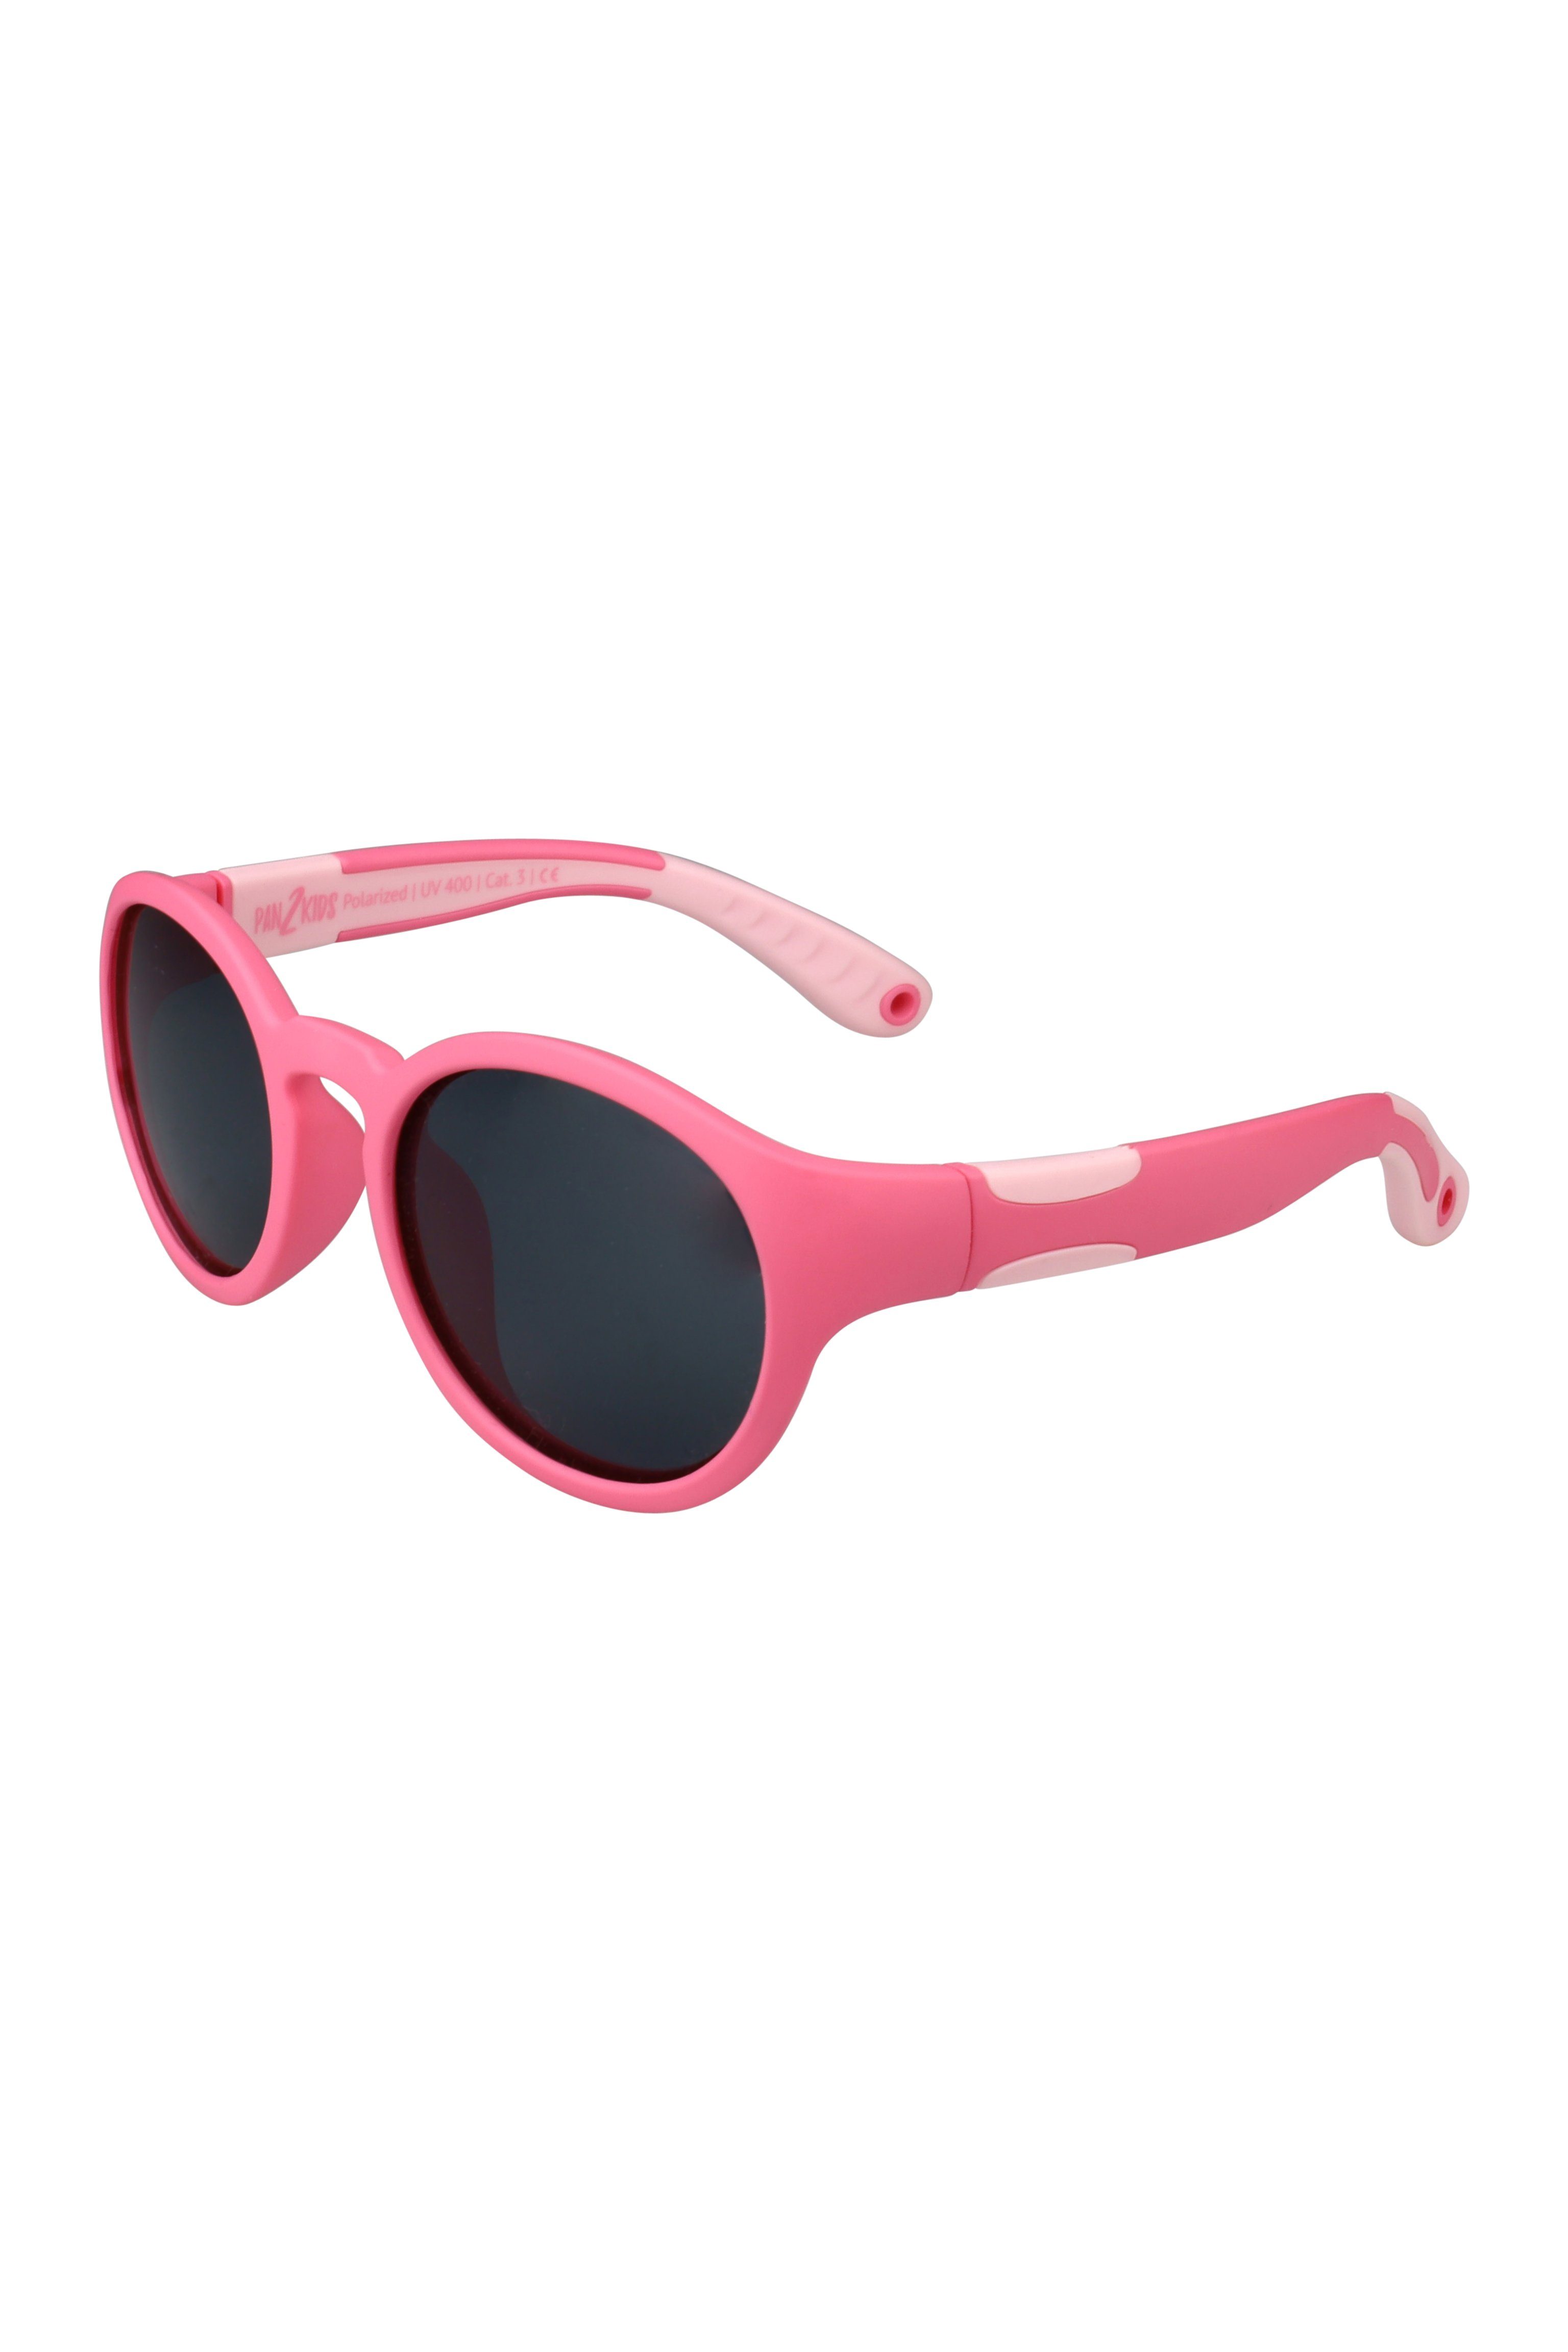 Panto Pan2Kids, - Sonnenbrille SUNGLASSES Pink Pacific ActiveSol Kinder Design, polarisiert Jahre, 2 – für 5